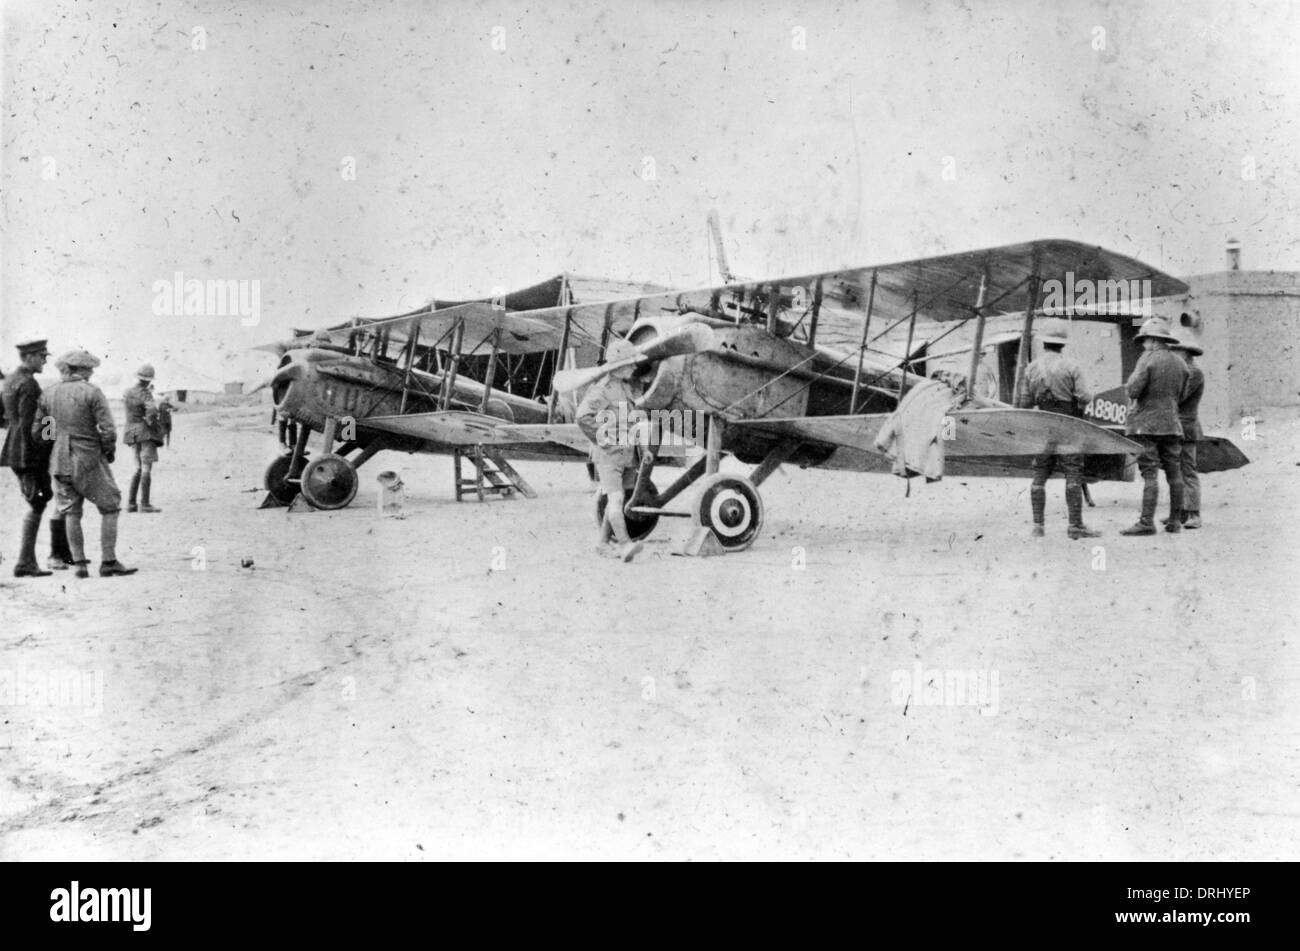 La Spad VII les biplans, Moyen-Orient, WW1 Banque D'Images